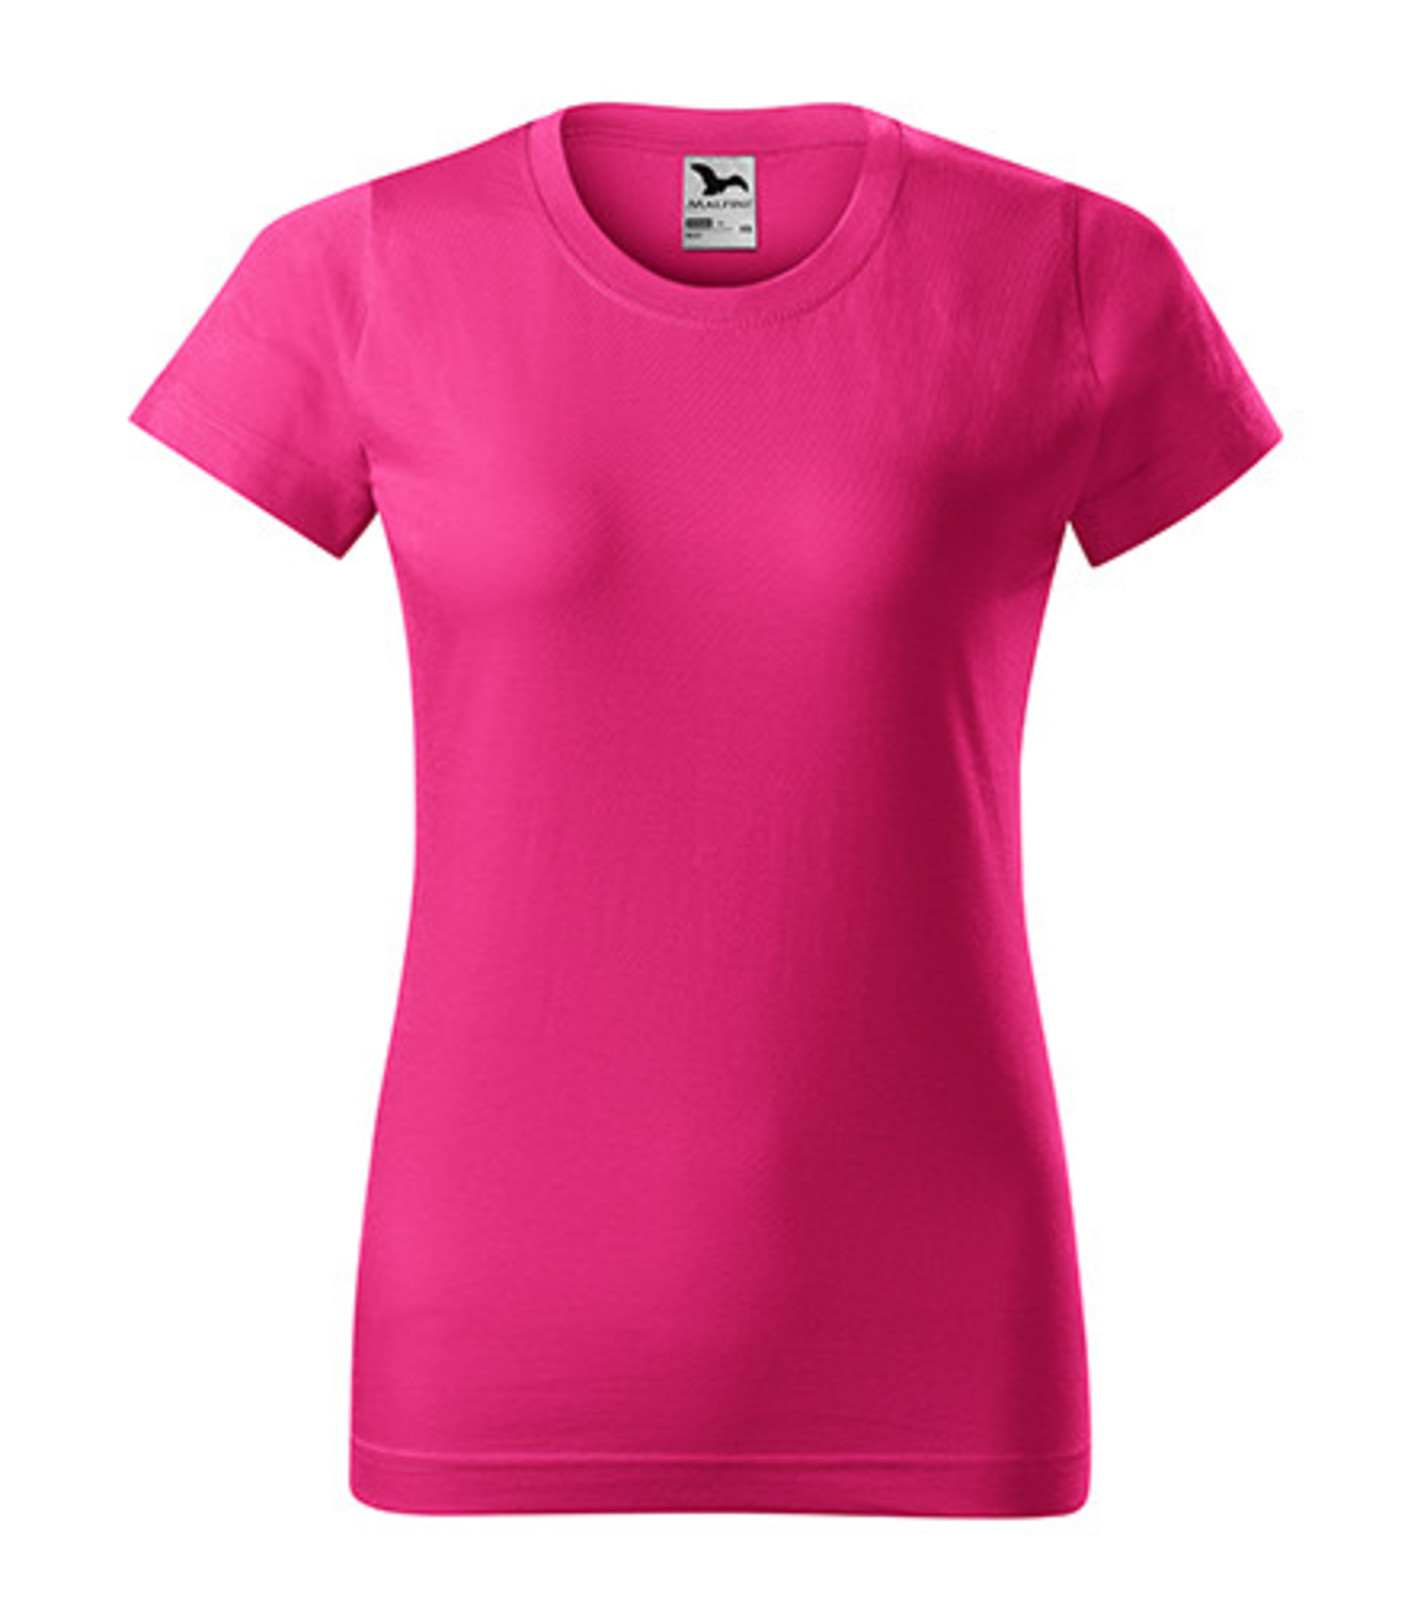 Dámske tričko Malfini Basic 134 - veľkosť: XXL, farba: purpurová